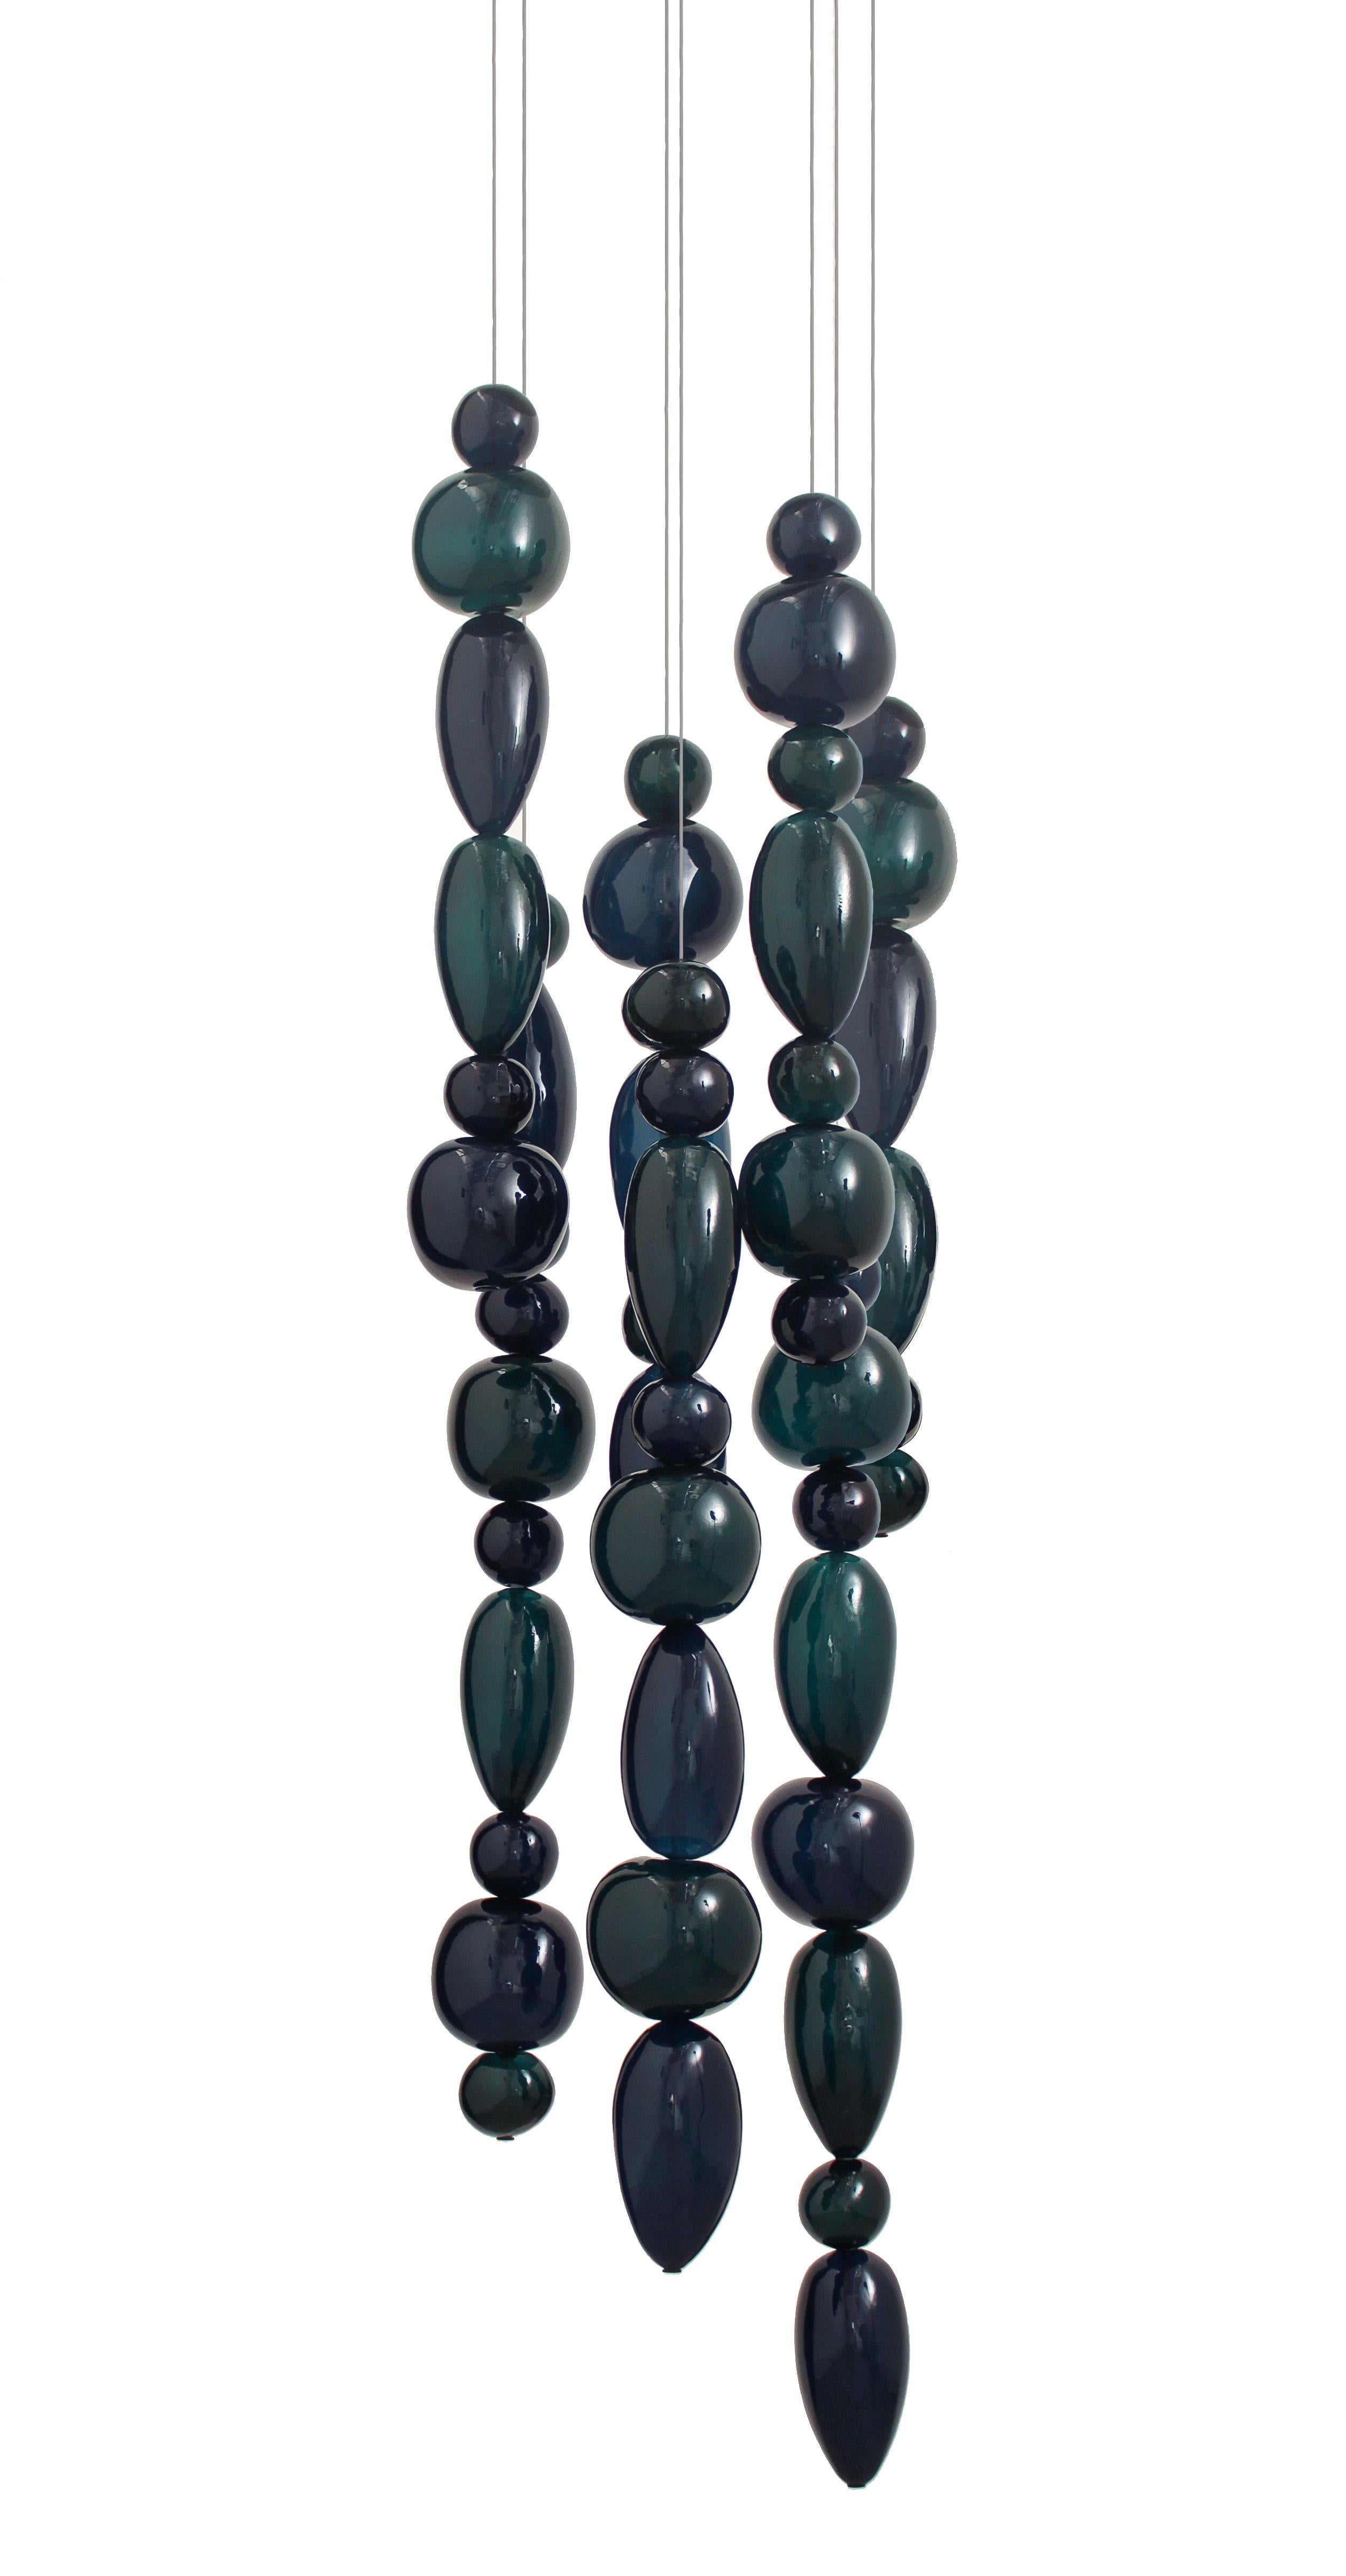 Hängeleuchten aus mundgeblasenem Glas. 7 Glassäulen auf 42 cm rundem Baldachin.
Die Chavana-Kollektion besteht aus von Kieselsteinen inspirierten Gläsern, die entlang eines  17-W-LED-Röhre, die zu einer Kaskade aus Licht und Farbe aufleuchtet.
Die